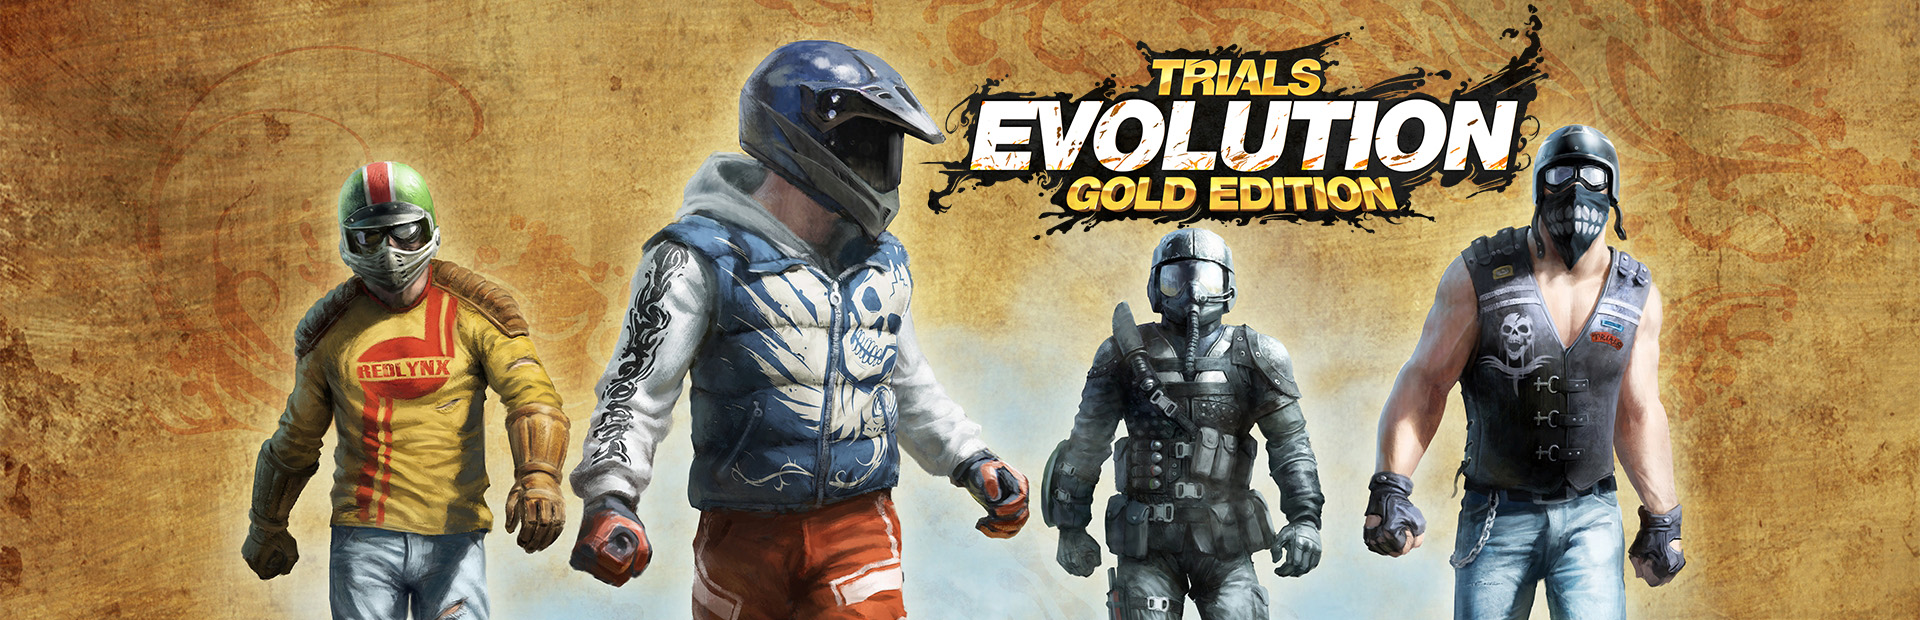 دانلود بازی Trials Evolution: Gold Edition برای کامپیوتر | گیمباتو